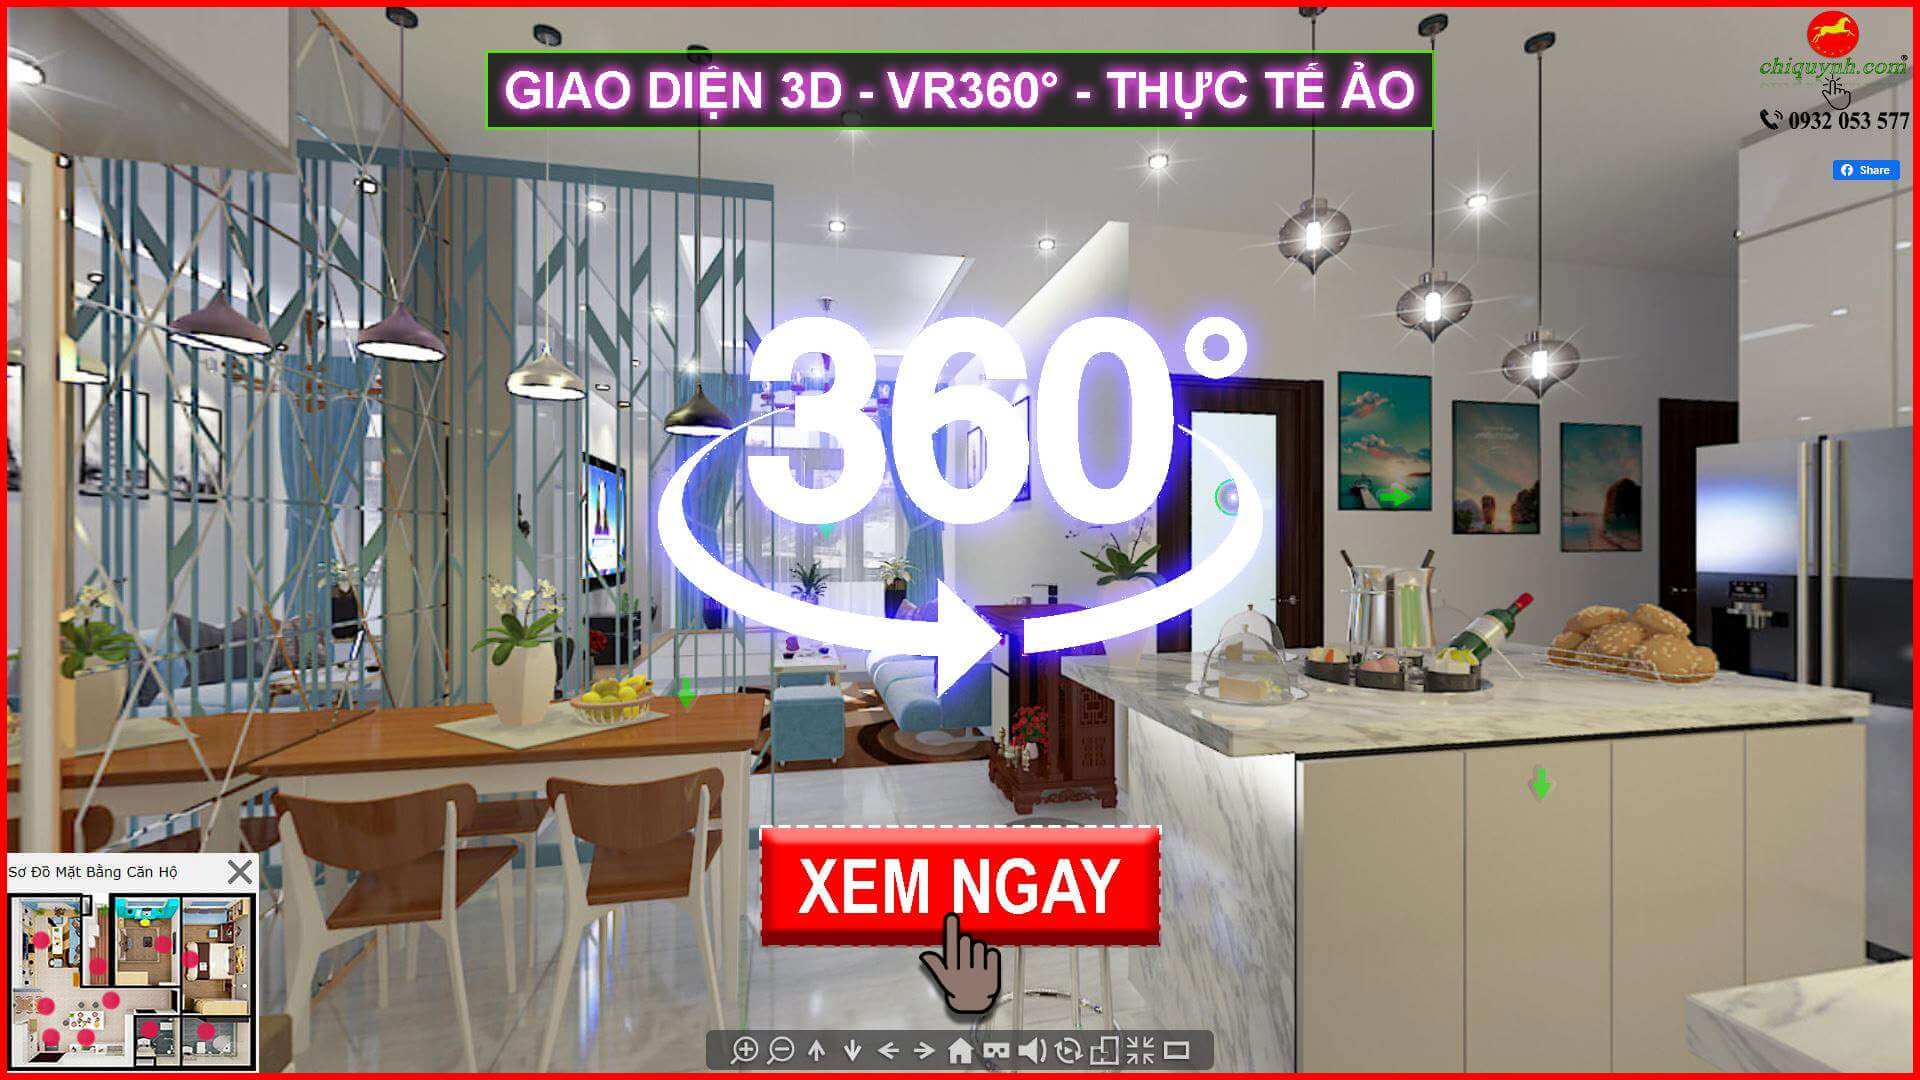 Giao diện 3D VR306 căn hộ mẫu